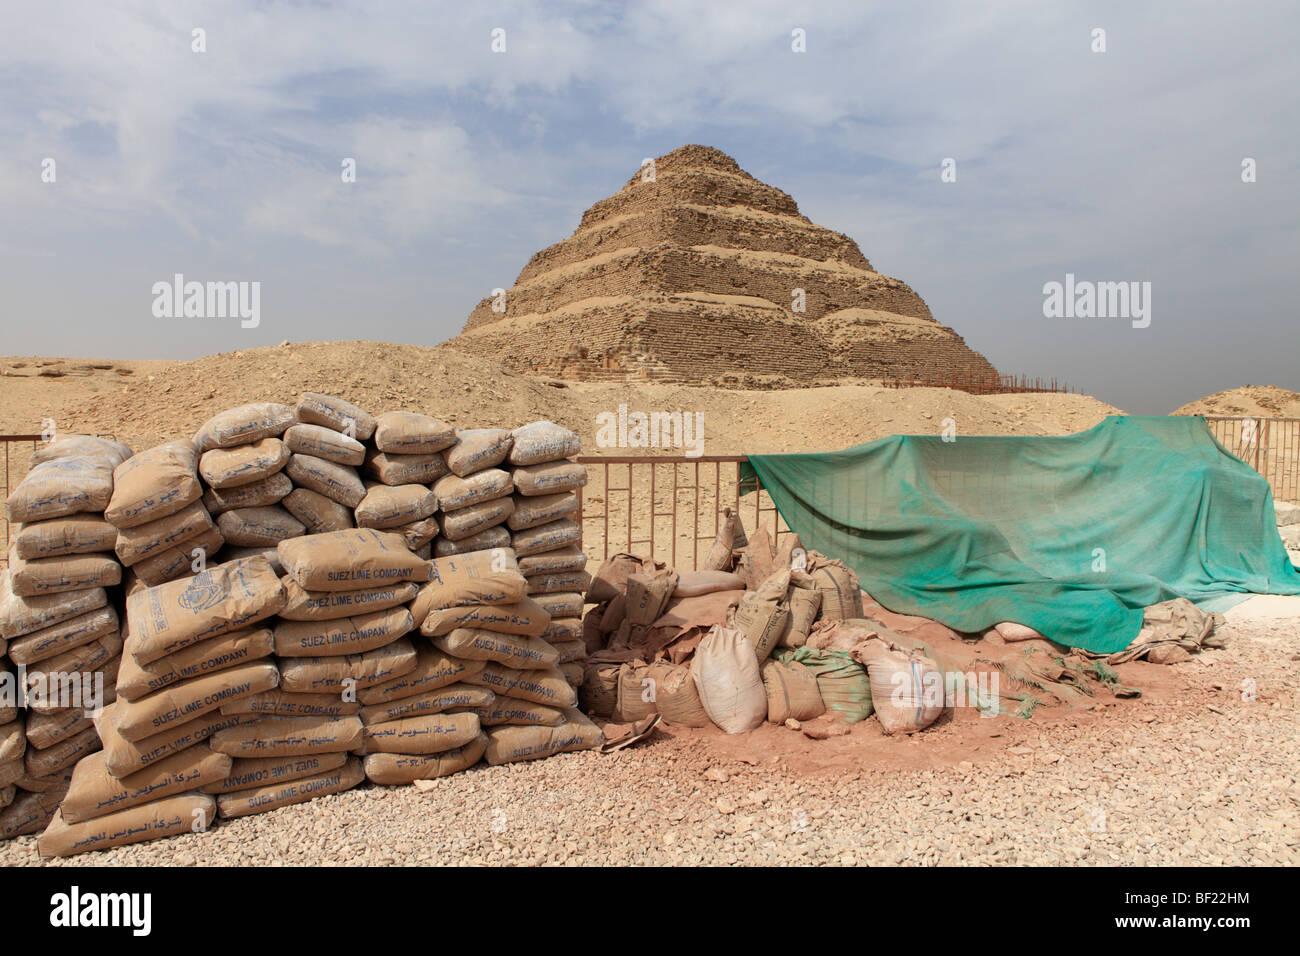 La piramide a gradini di Zoser con sacchi di materiale da costruzione utilizzati nel restauro - Saqqara, Egitto. Foto Stock